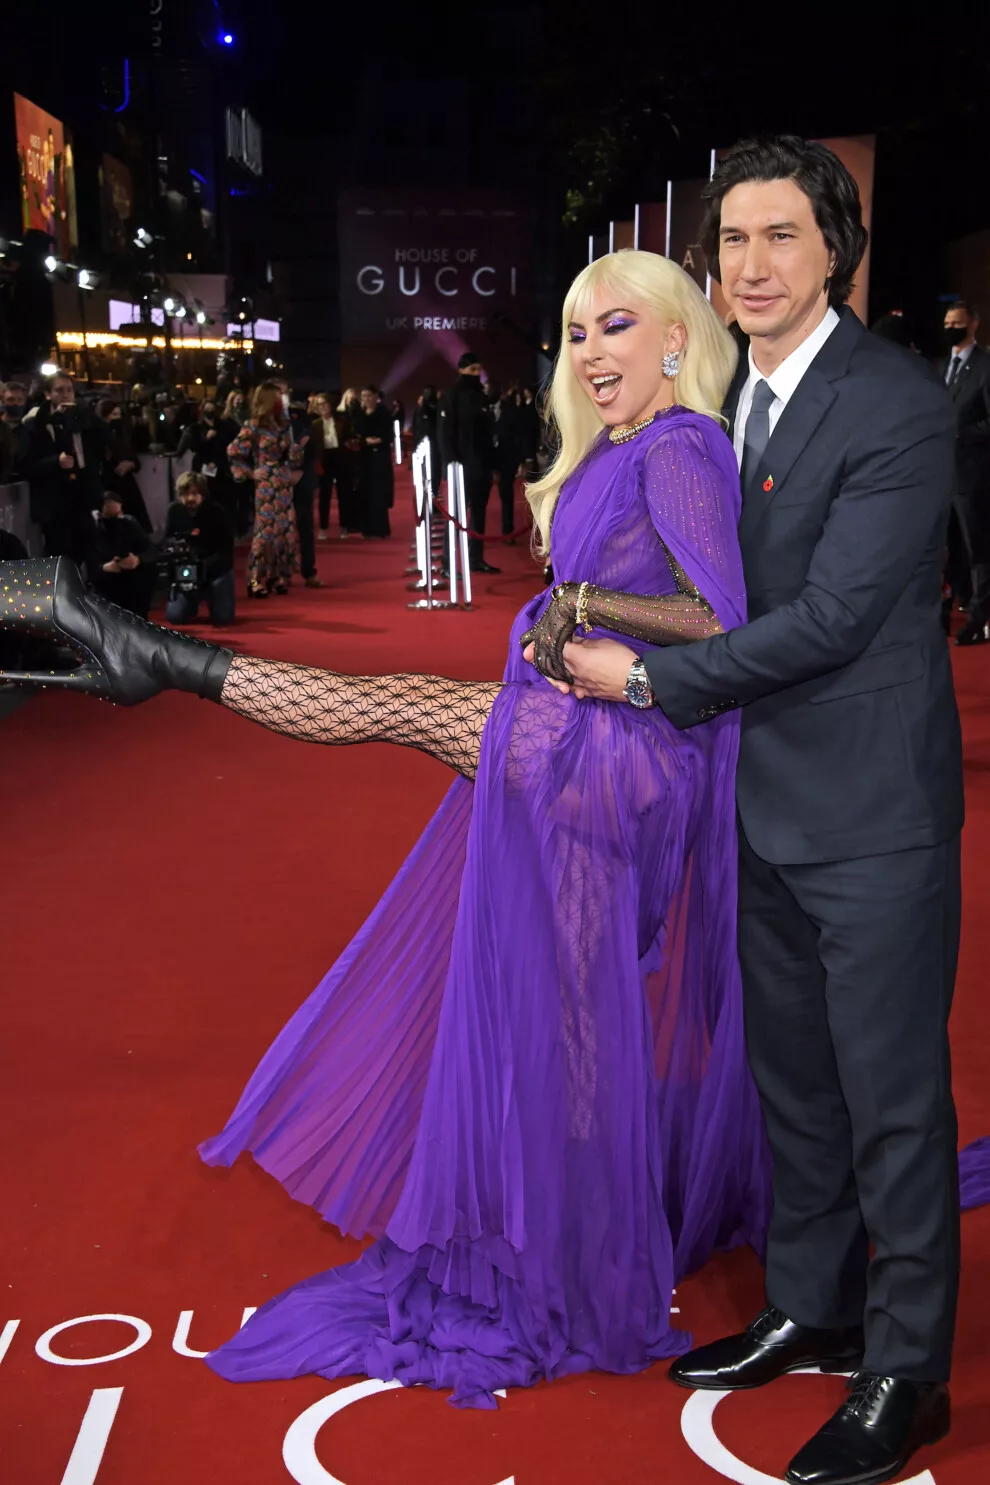 Адам Драйвер та Леді Гага на прем'єрі "Дома Gucci" в Лондоні